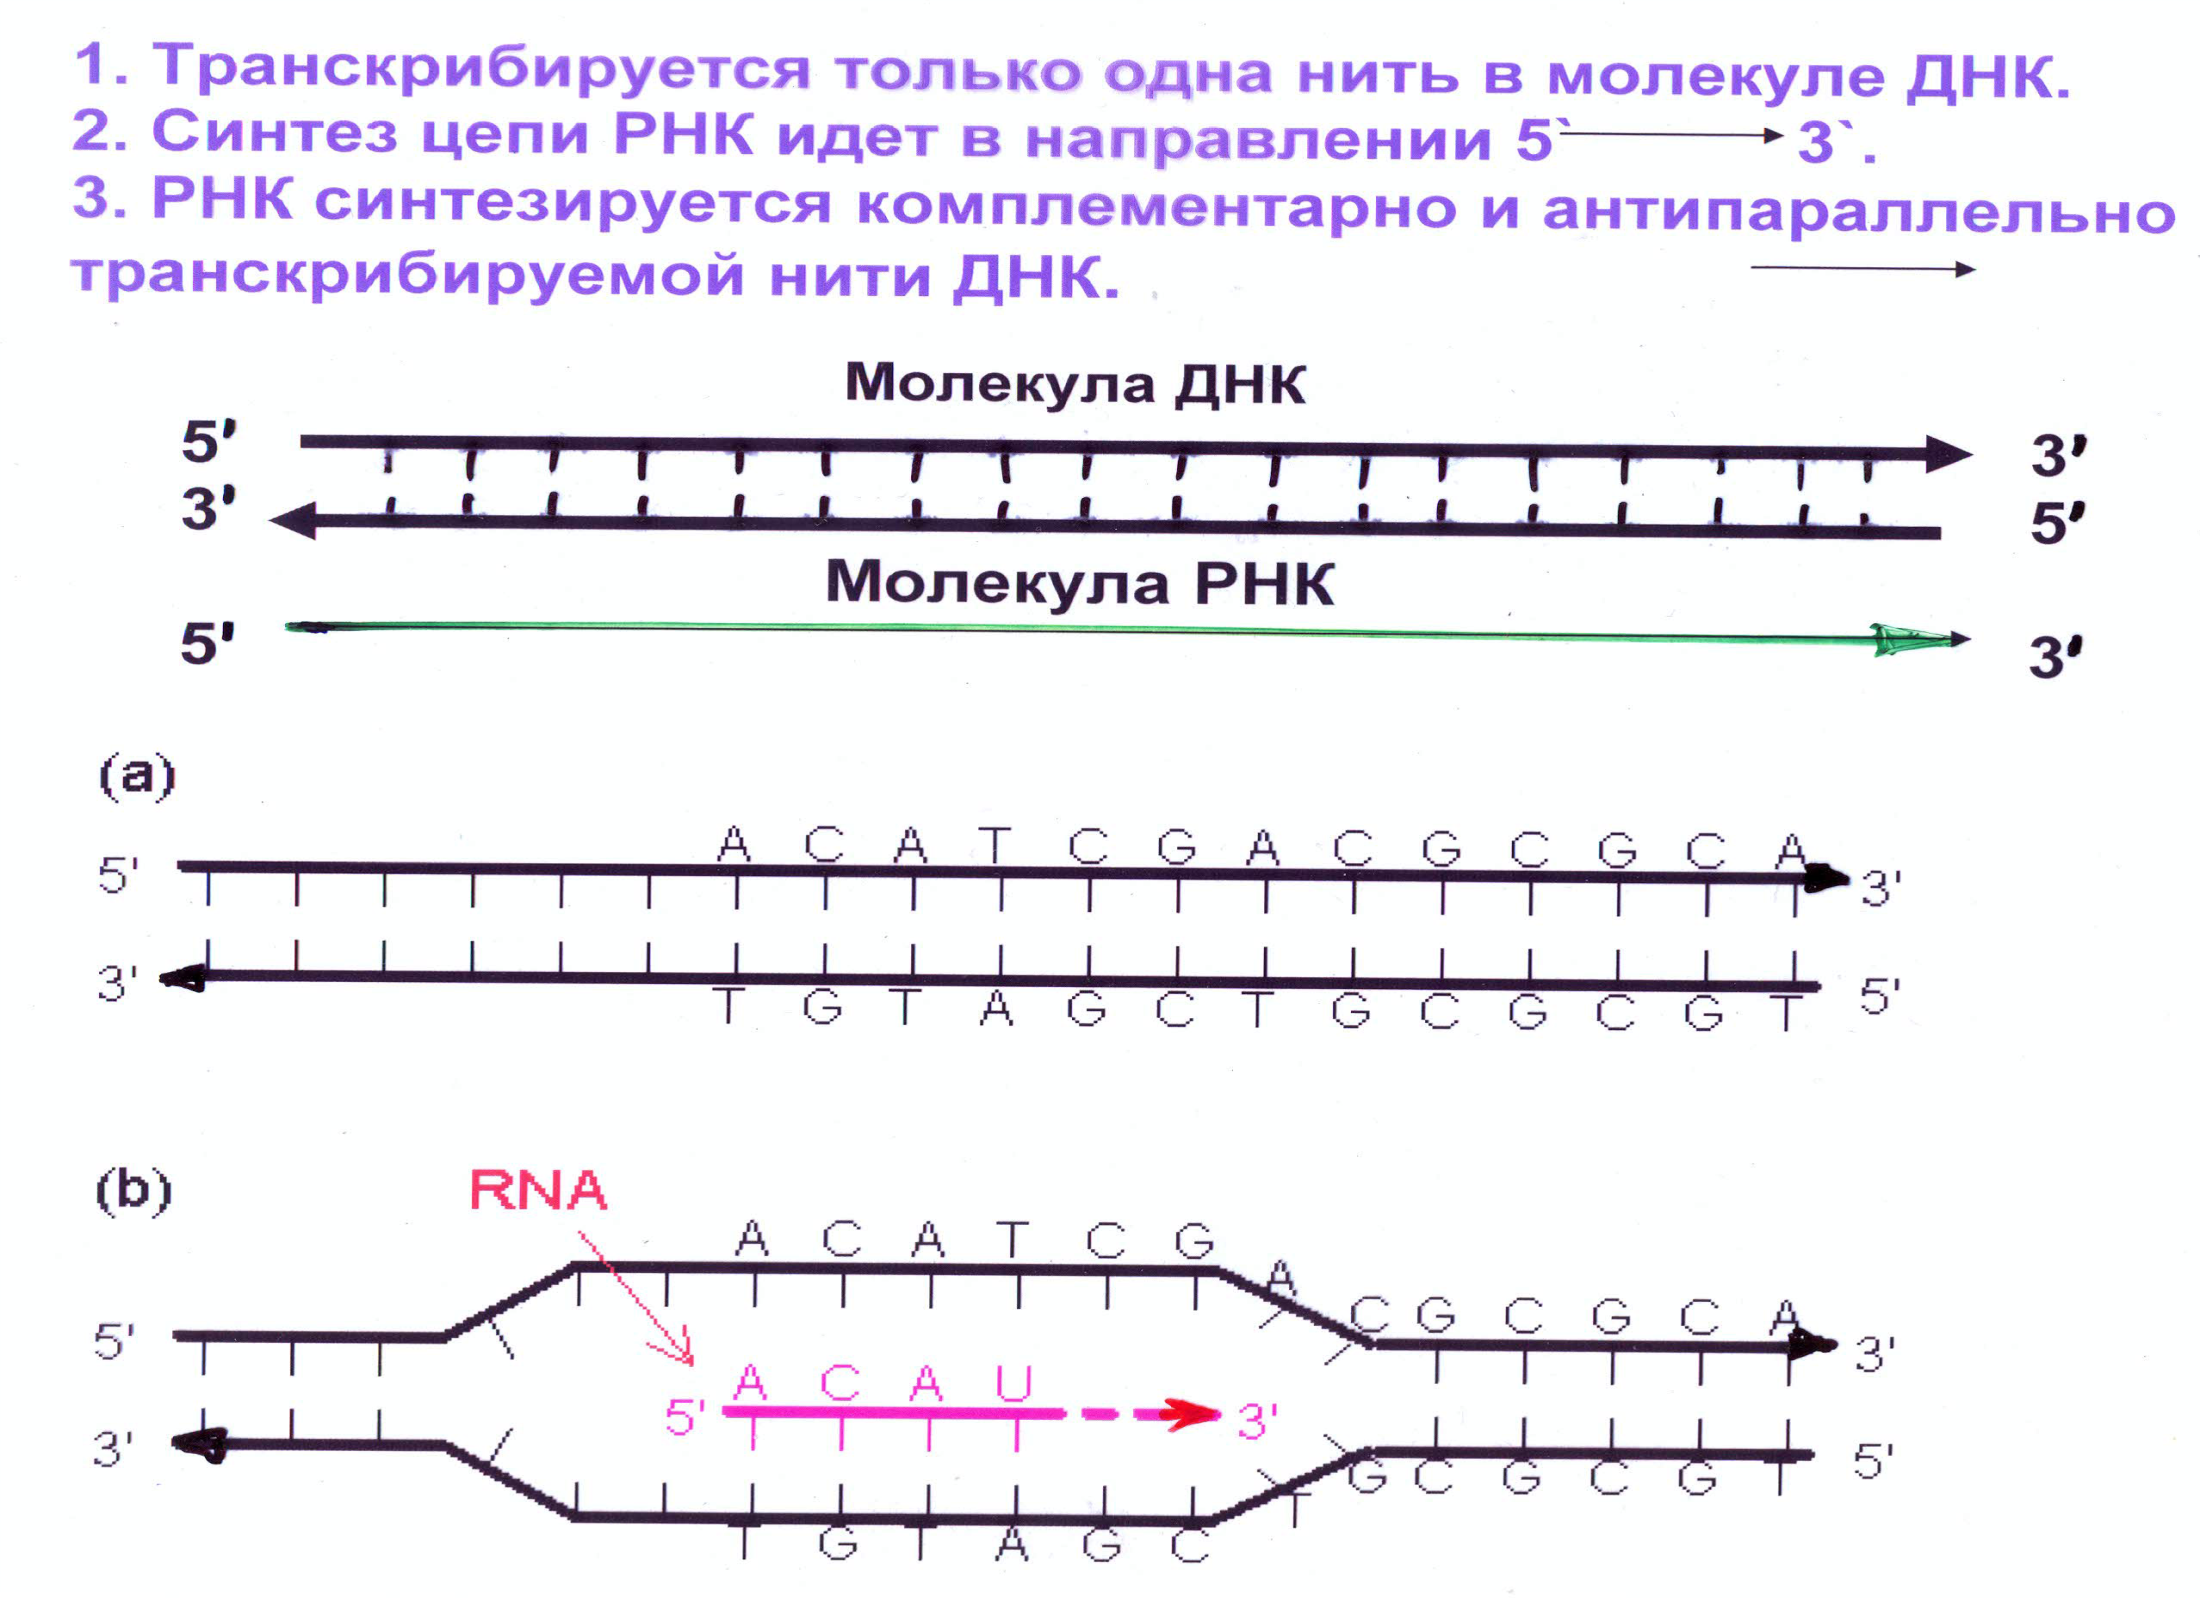 Направление образование РНК. Направление синтеза РНК. Направление транскрибируемой цепи ДНК. Штрих концы ДНК И РНК.